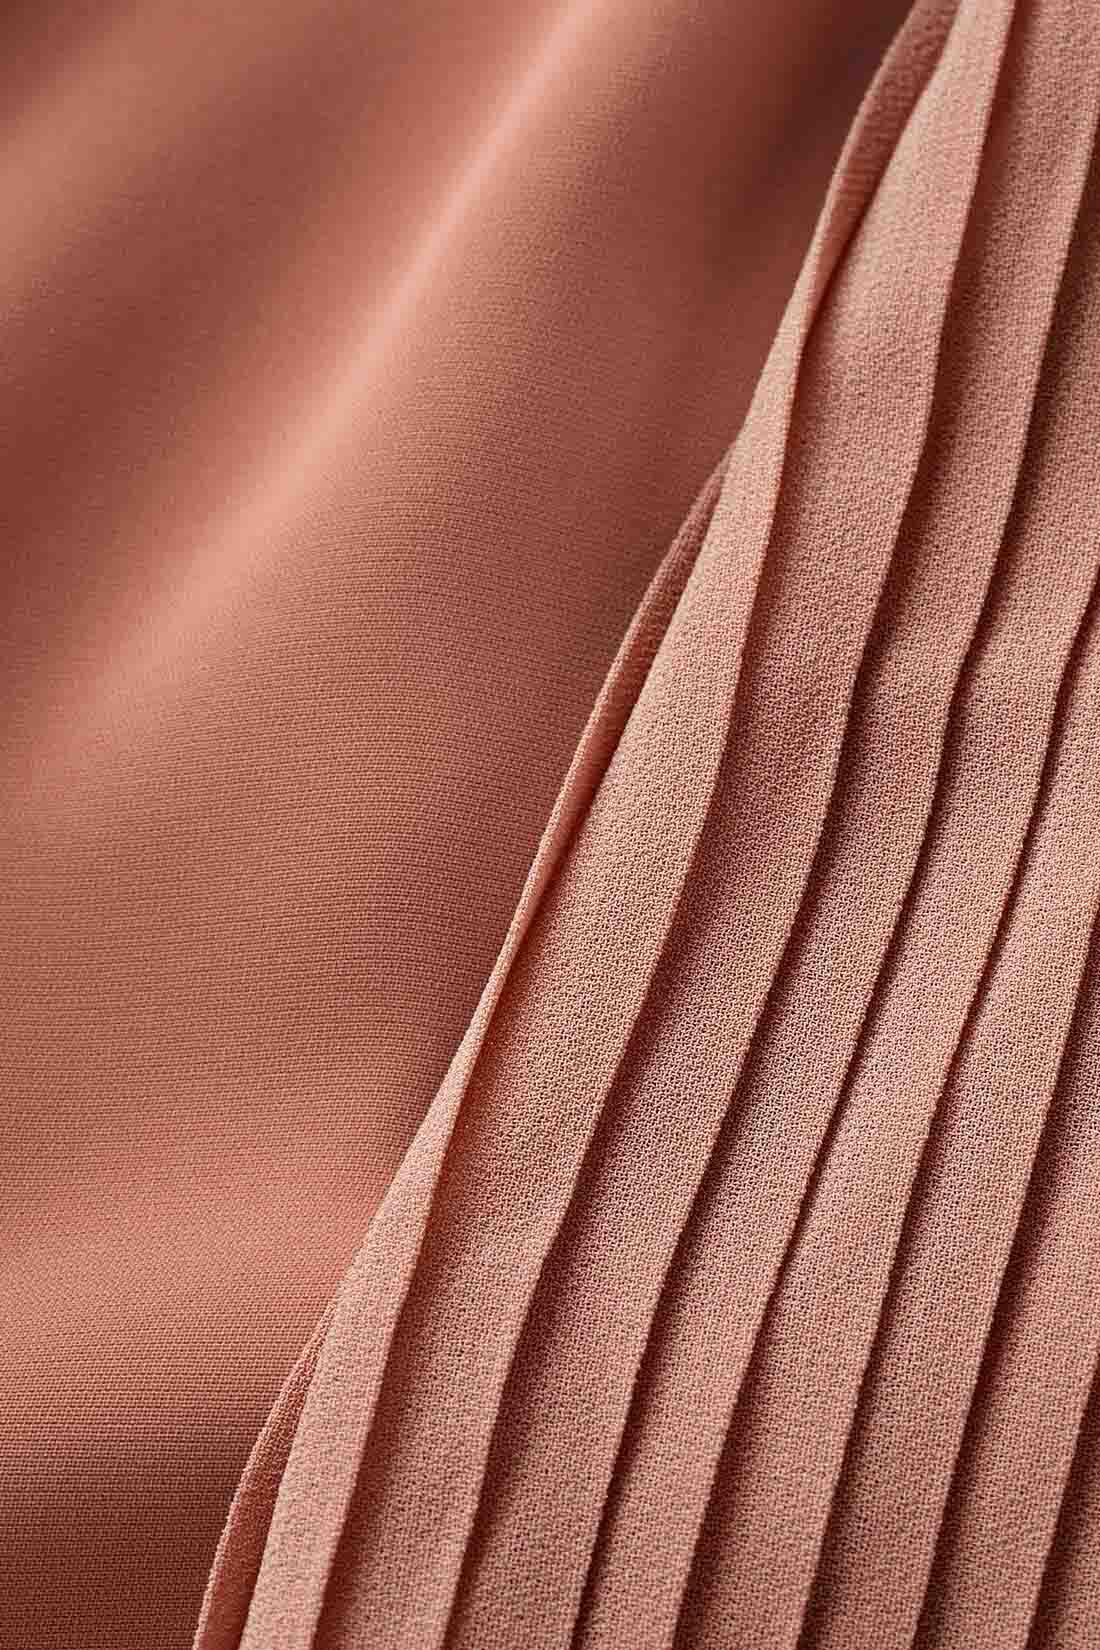 イディット|IEDIT[イディット]　袖プリーツが繊細なボウタイデザインブラウス〈テラコッタピンク〉|マットなポリエステル素材とシフォンプリーツの軽やかな薄手素材の組み合わせ。